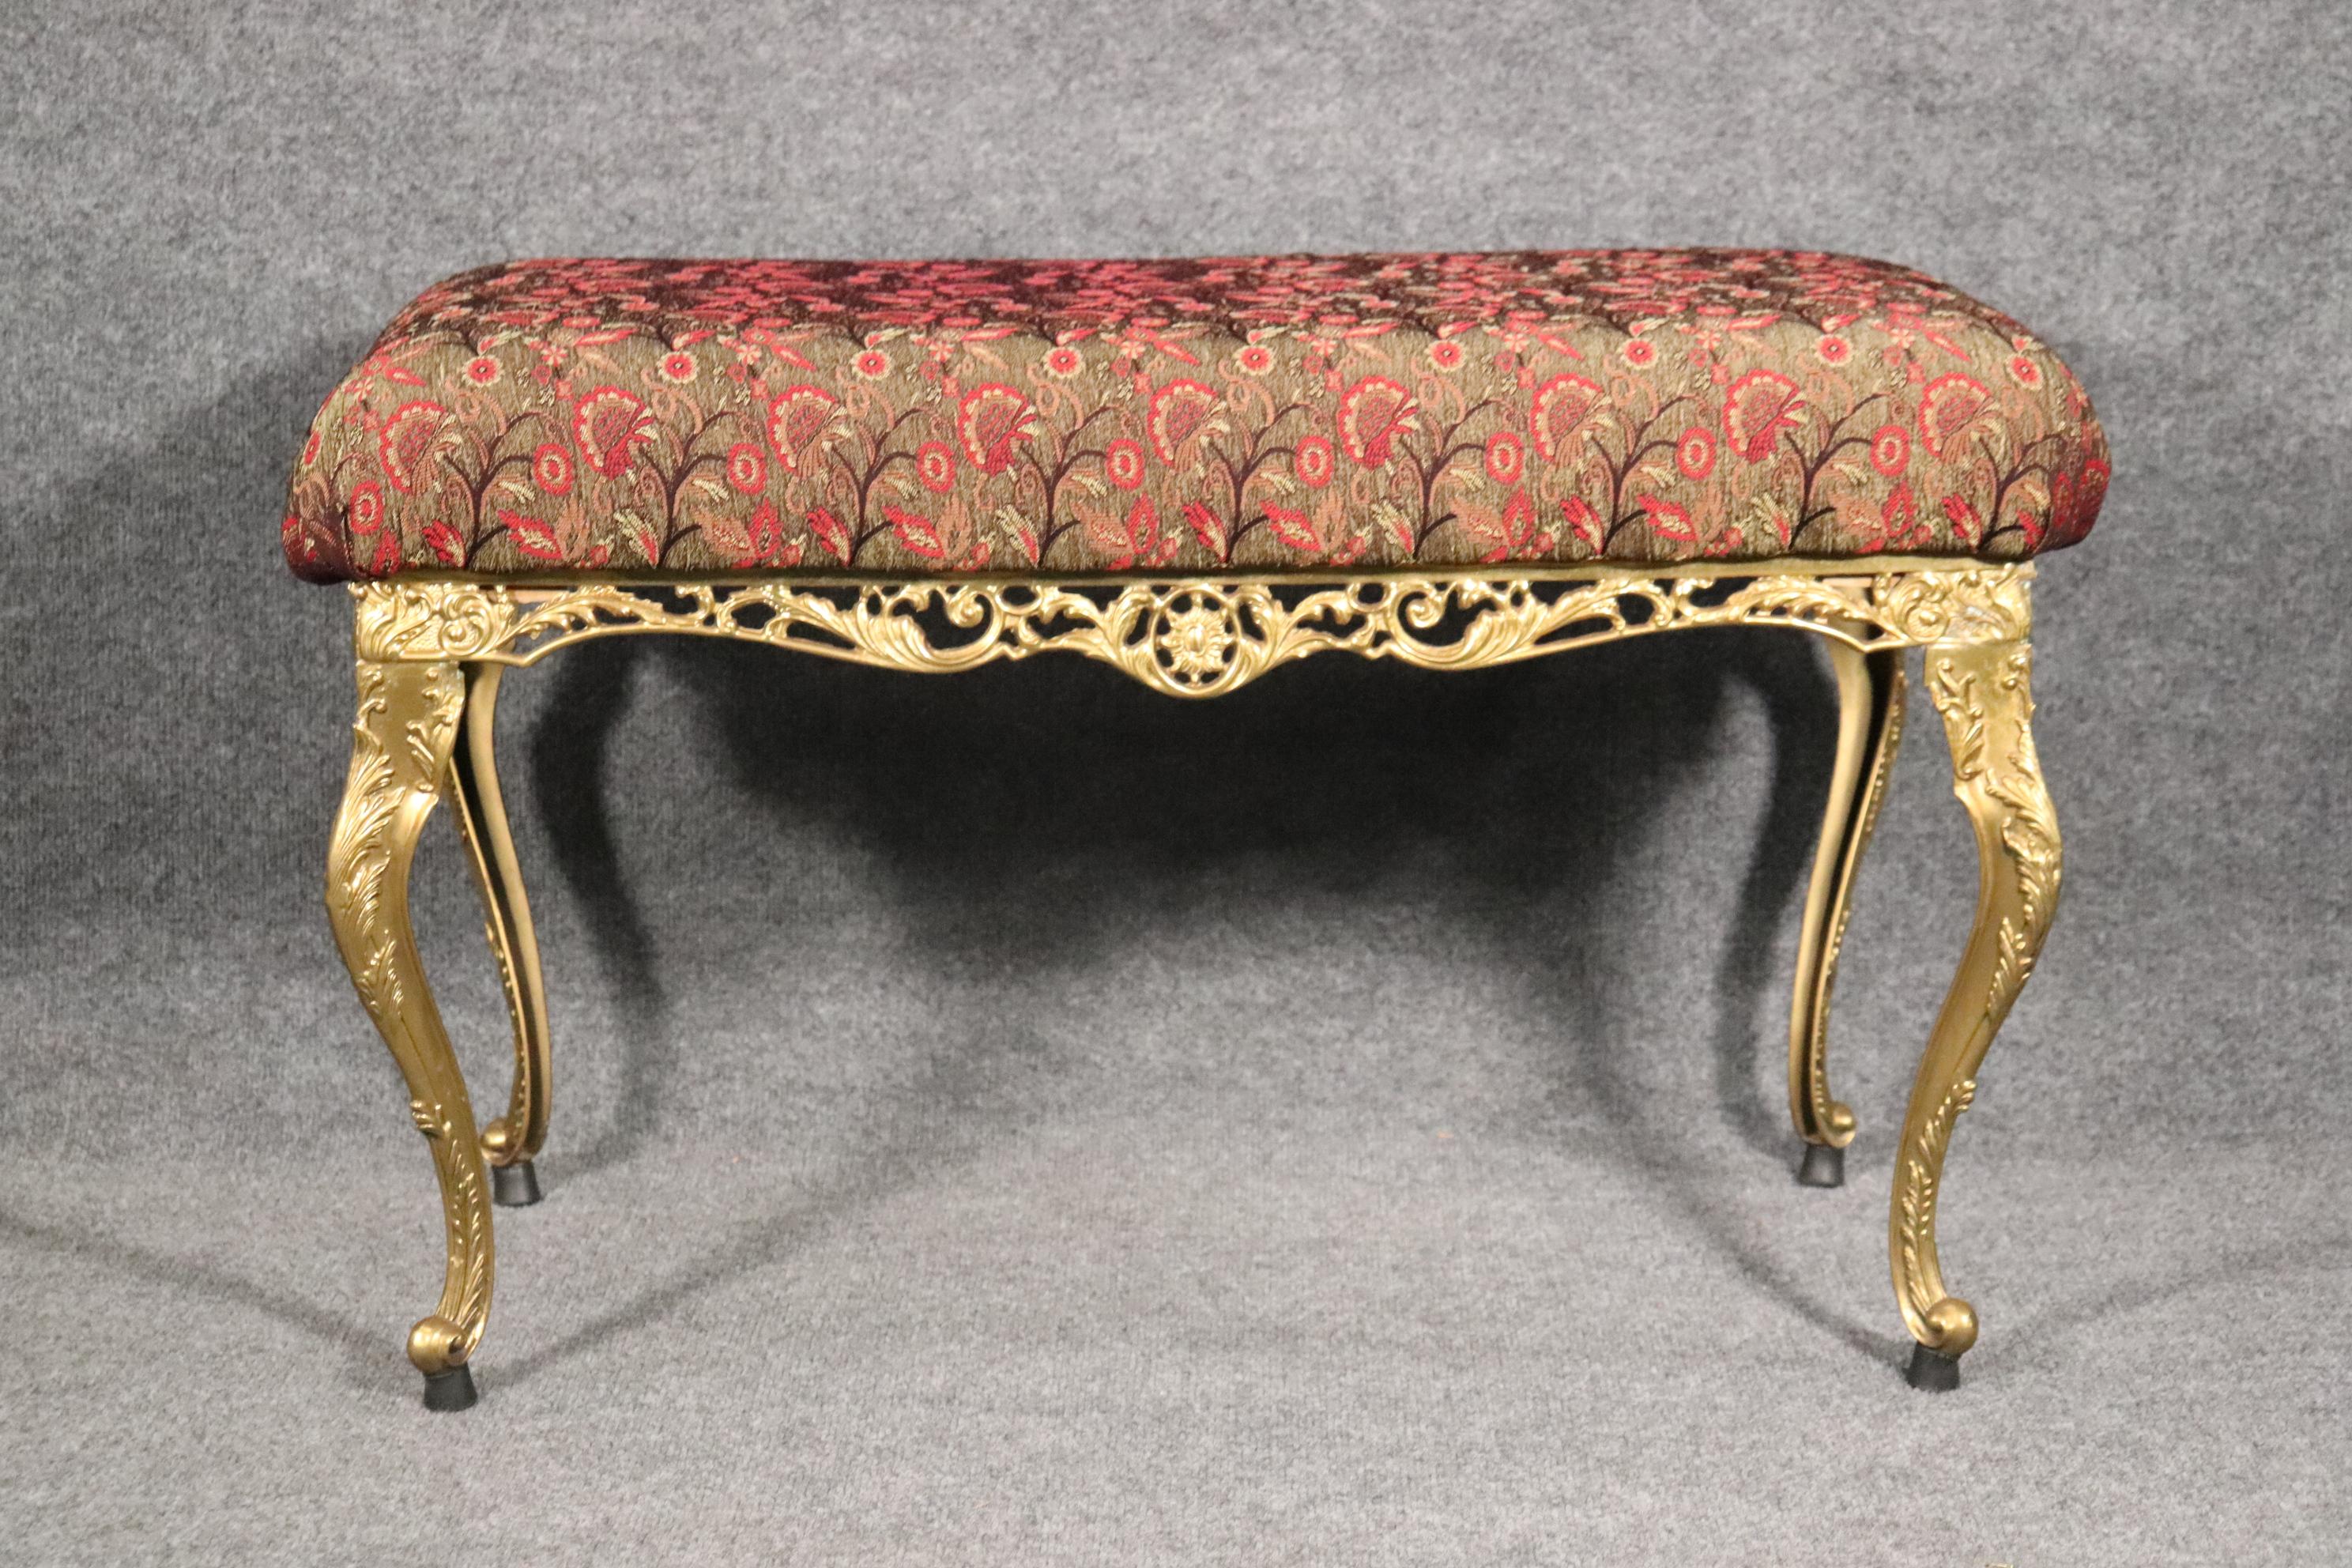 Dimensions : H : 20 1/2in in W : 34in D : 19in 
Ce banc de style Louis XV est une pièce de haute qualité fabriquée en laiton et accompagnée d'un coussin rembourré amovible. Ce banc/ottoman ajoutera une touche de luxe et de caractère à votre lieu de